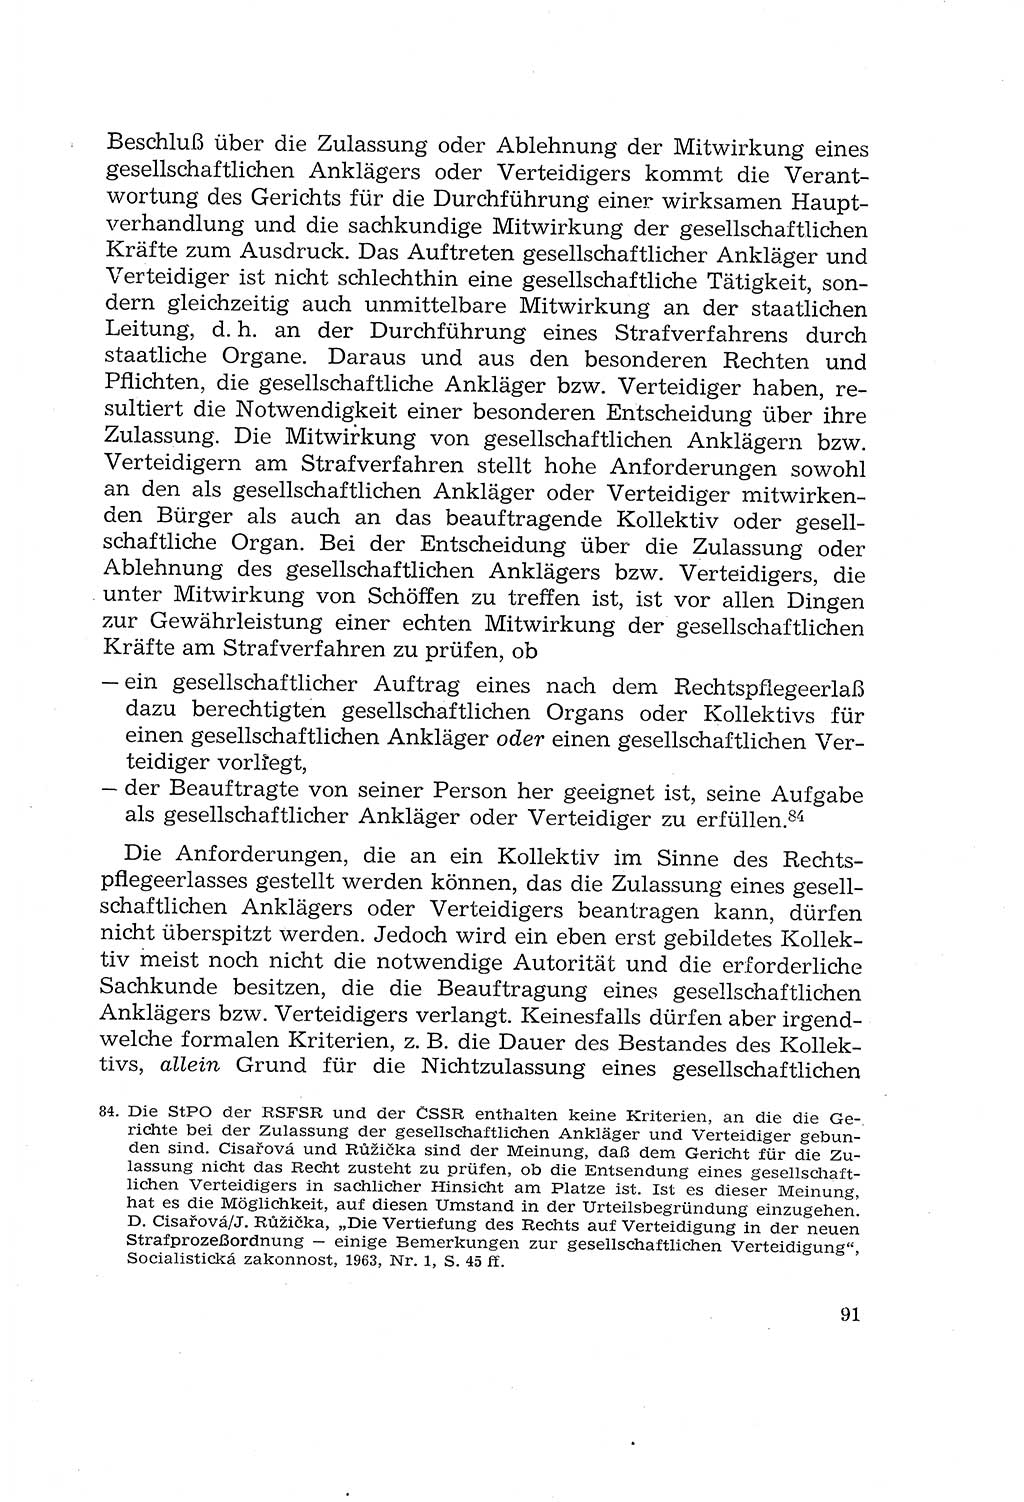 Die Mitwirkung der Werktätigen am Strafverfahren [Deutsche Demokratische Republik (DDR)] 1966, Seite 91 (Mitw. Str.-Verf. DDR 1966, S. 91)